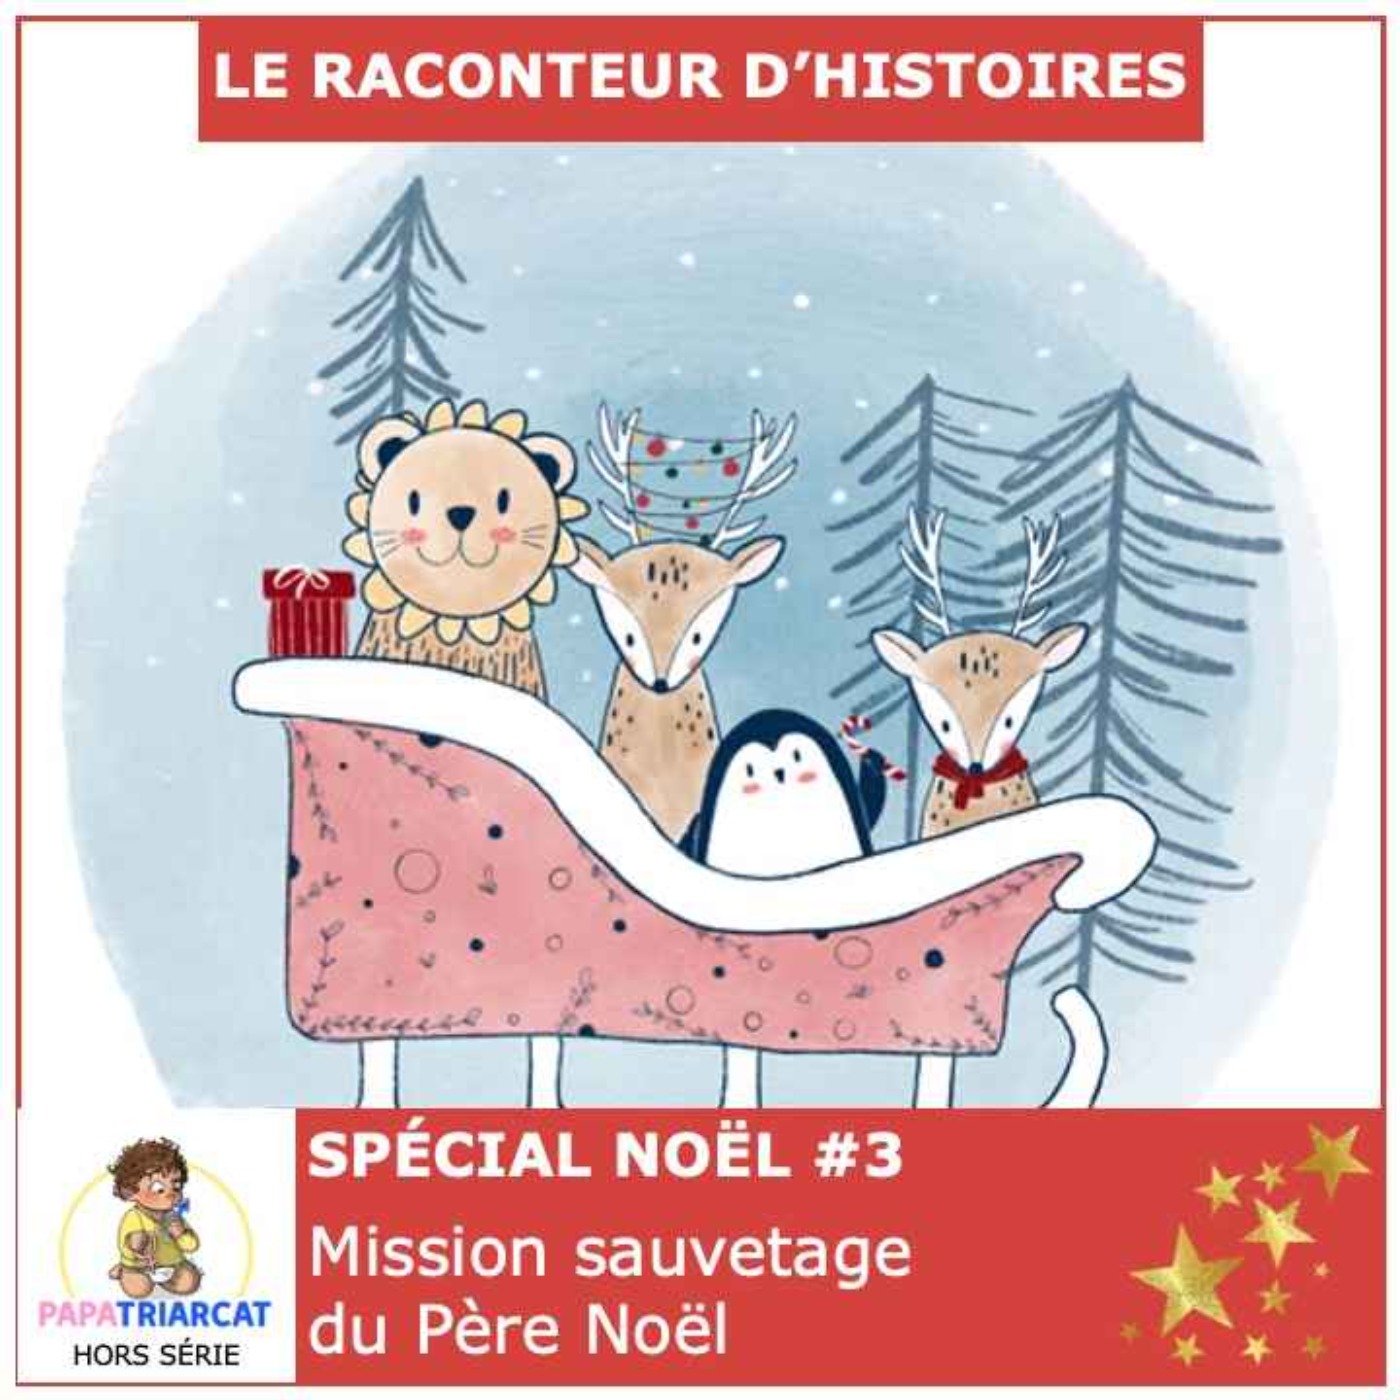 Hors série Spécial Noël #3 - Mission sauvetage du Père Noël - Le raconteur d'histoires